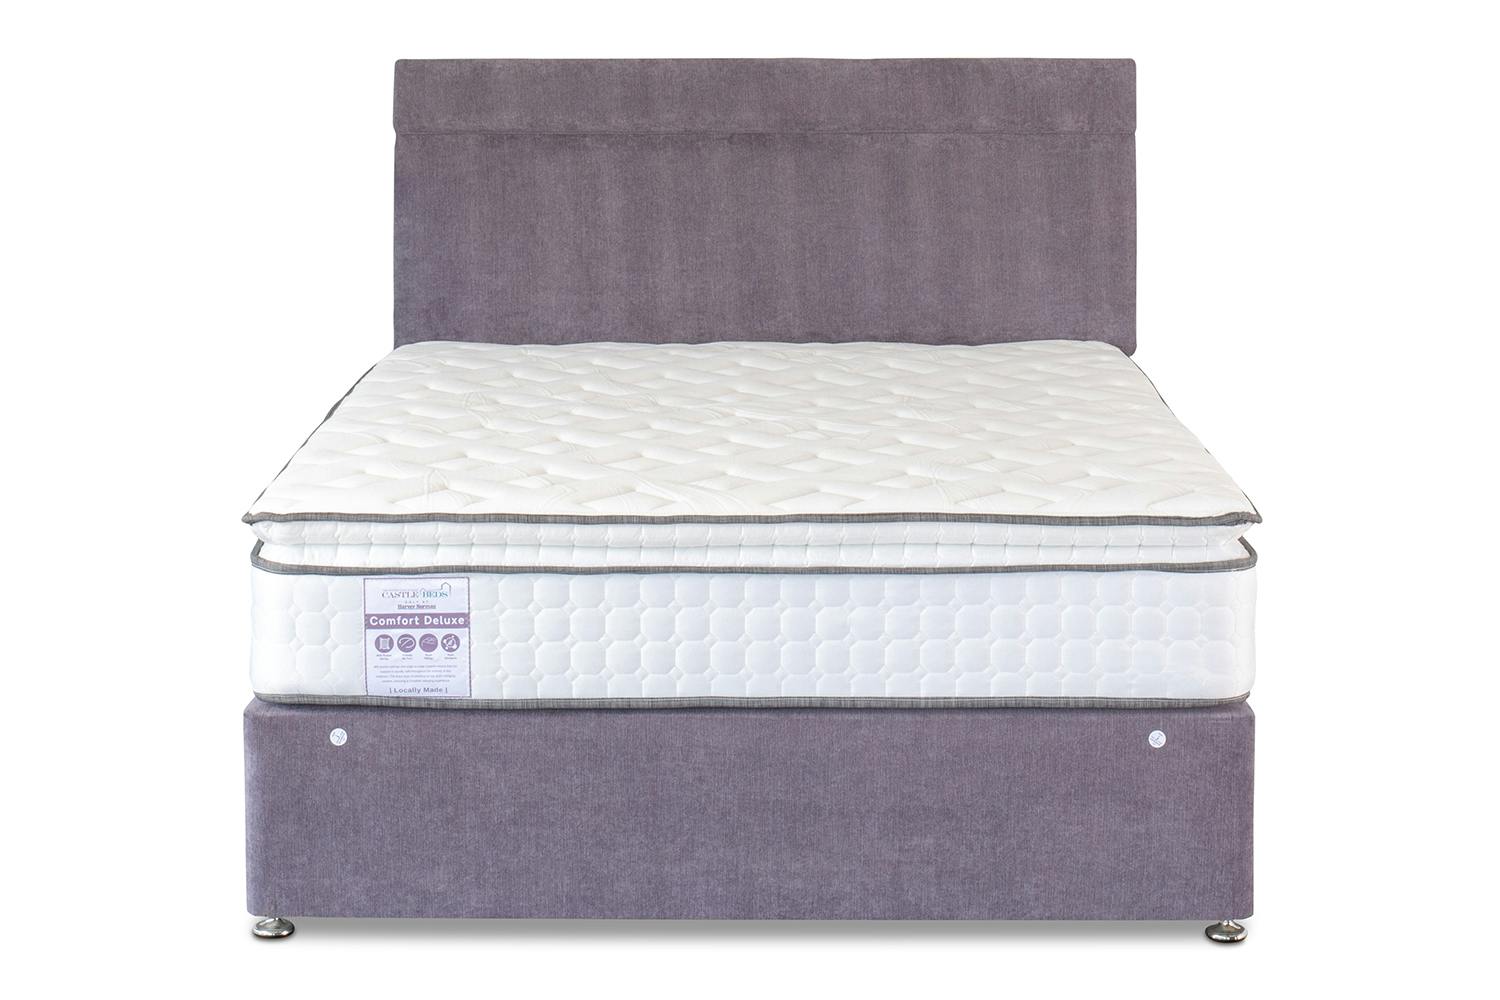 king coil express comfort mattress cantebury